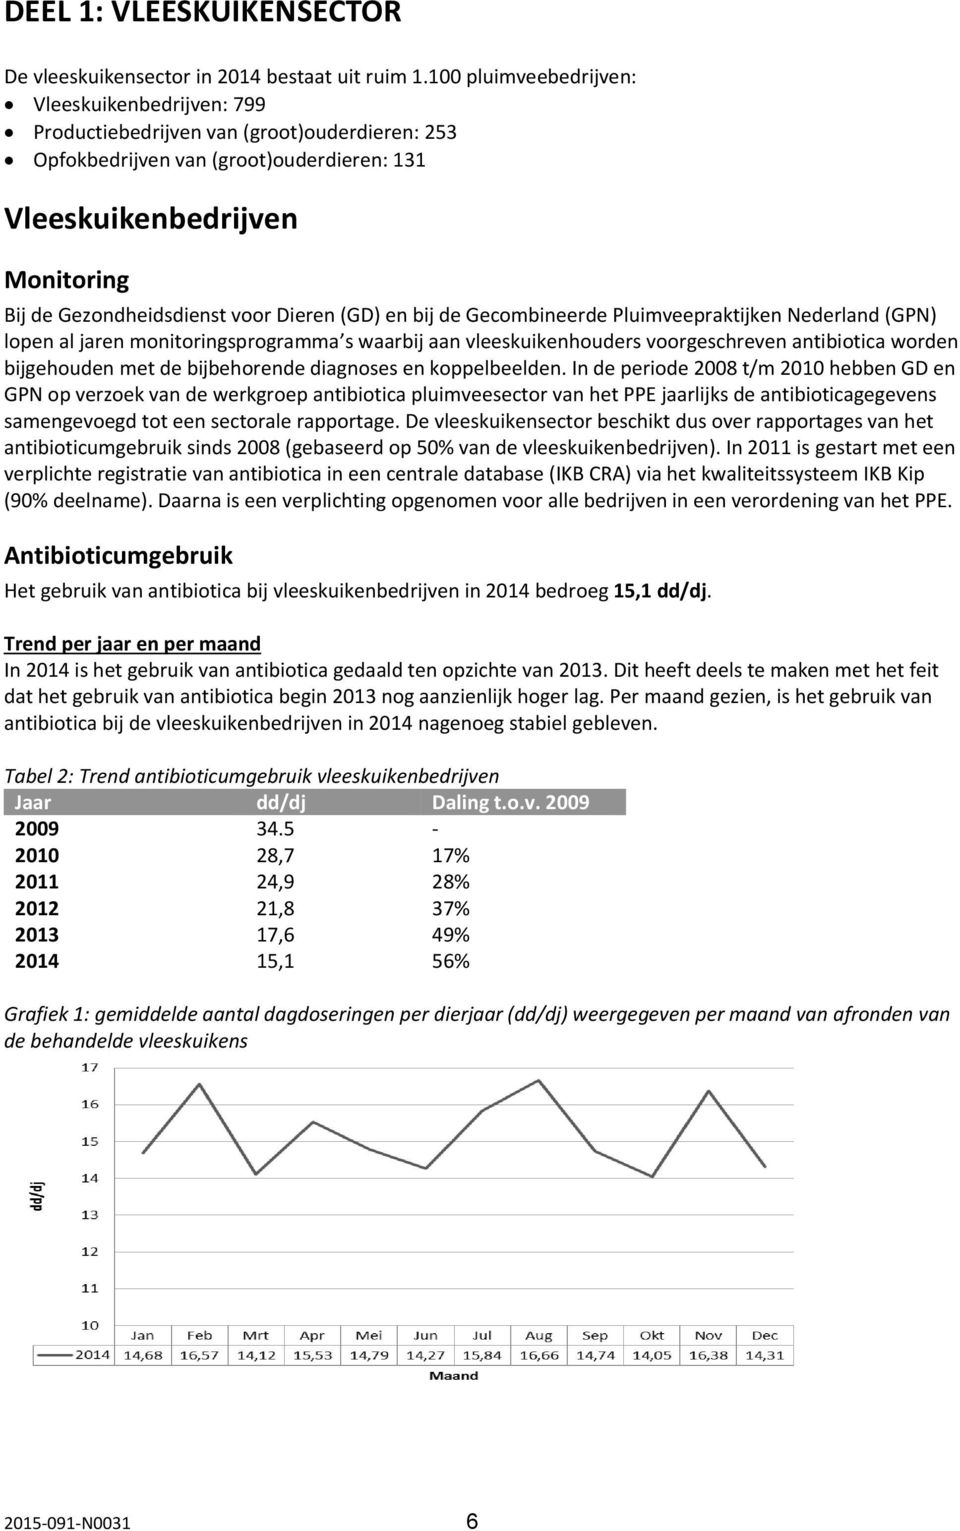 voor Dieren (GD) en bij de Gecombineerde Pluimveepraktijken Nederland (GPN) lopen al jaren monitoringsprogramma s waarbij aan vleeskuikenhouders voorgeschreven antibiotica worden bijgehouden met de